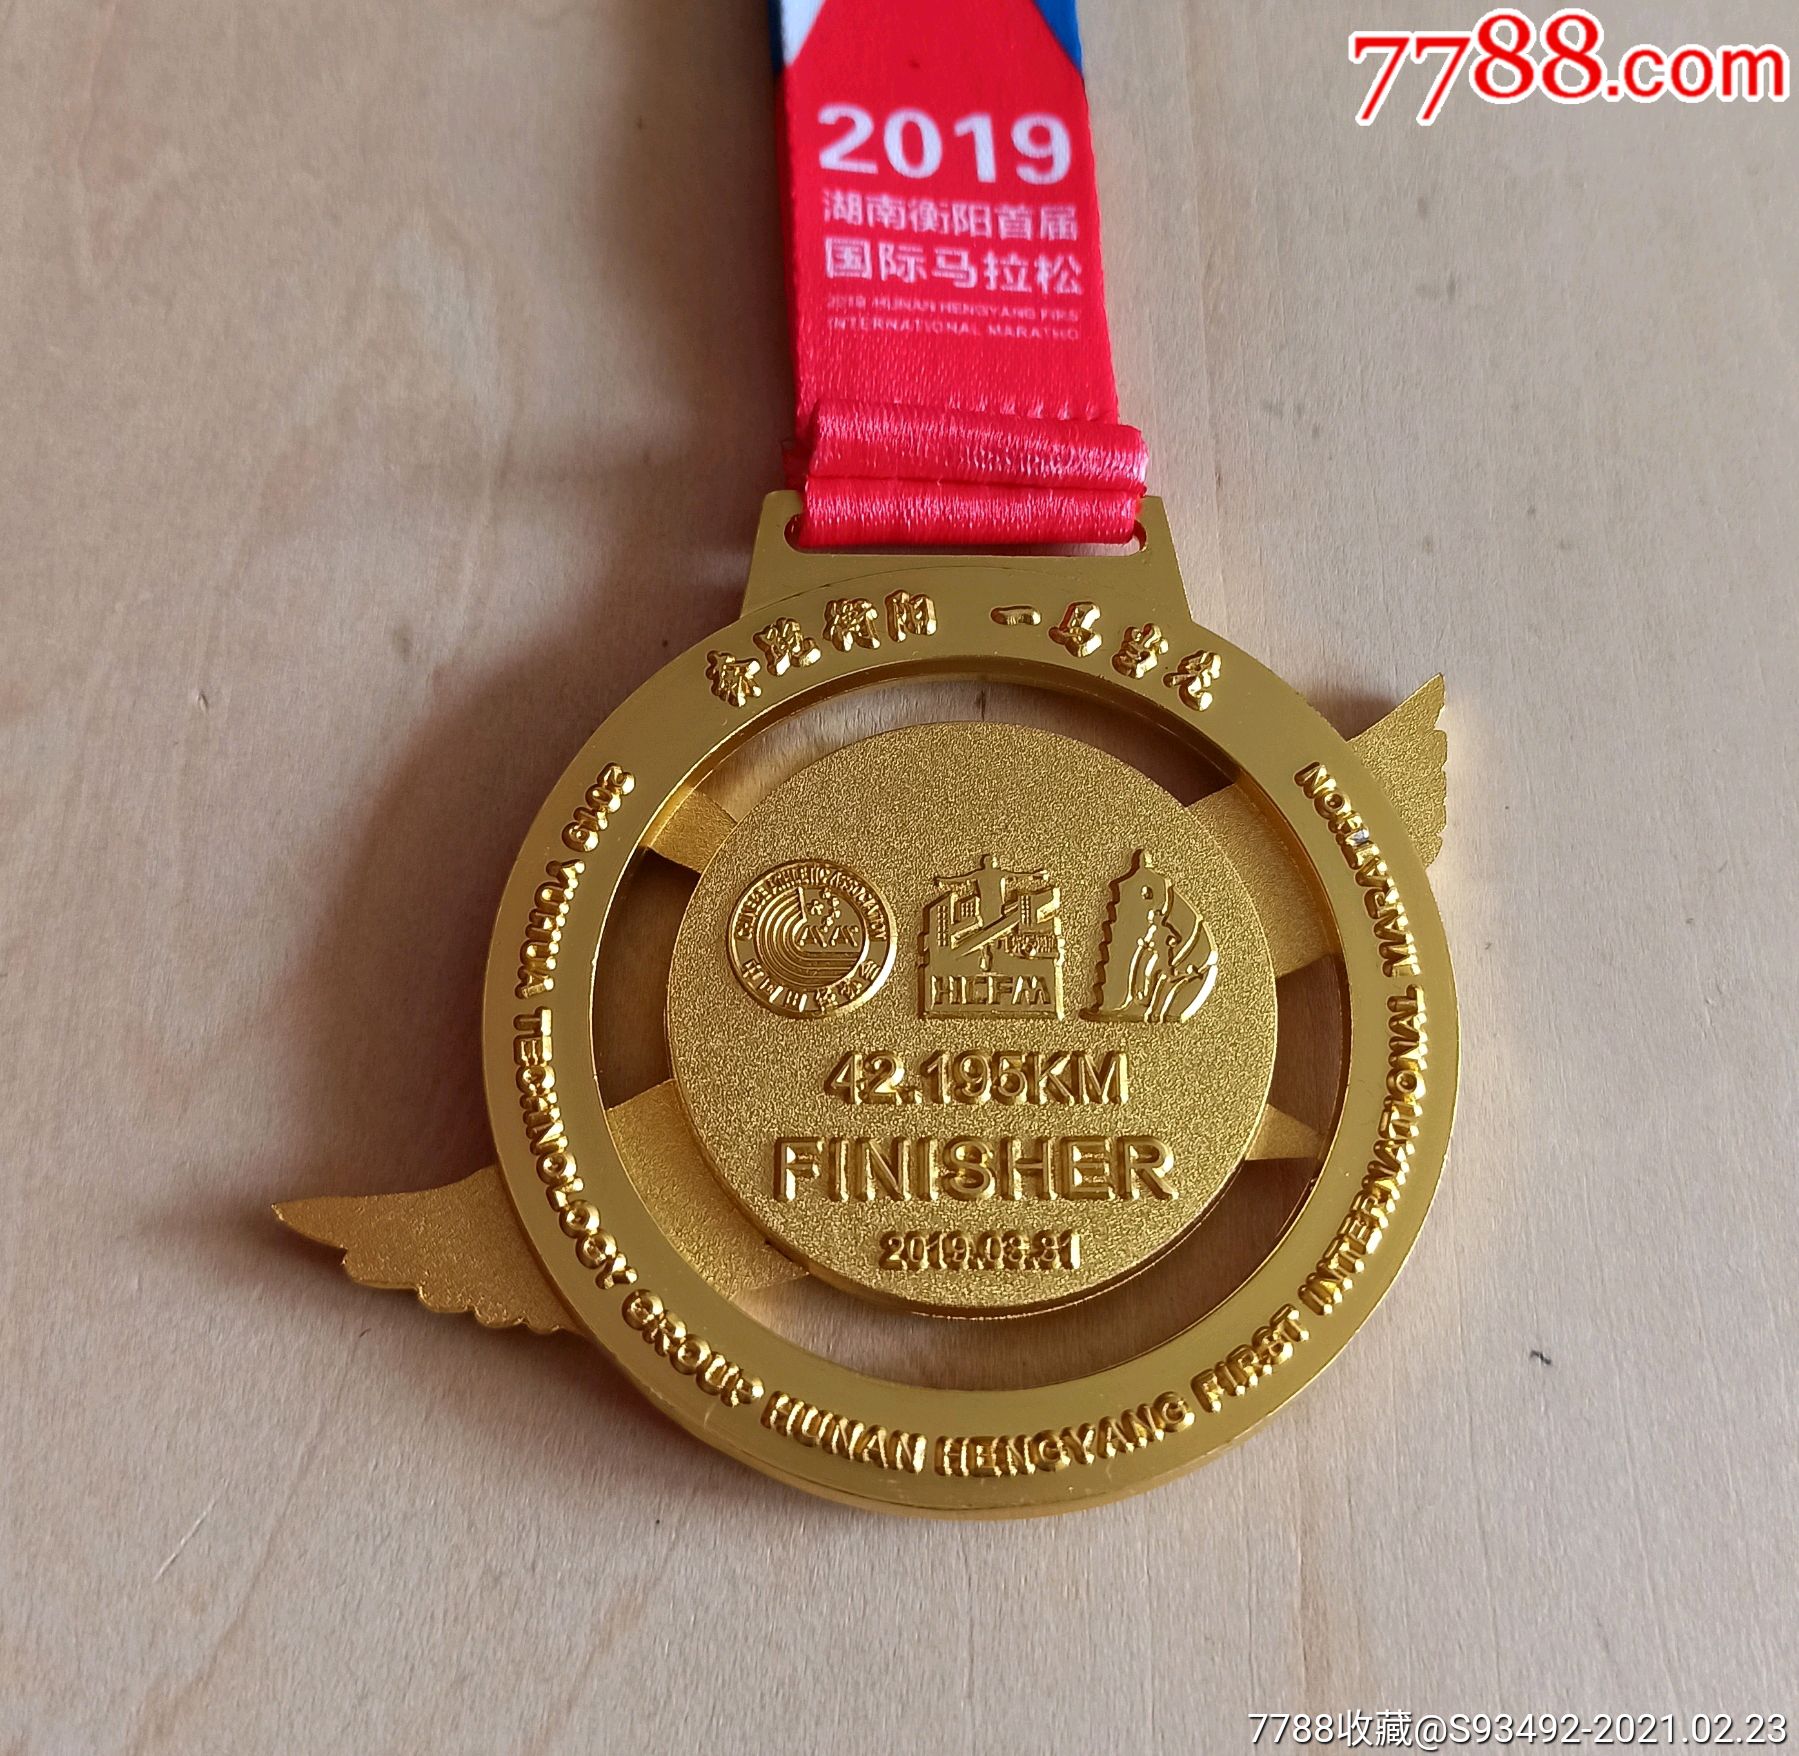 2019湖南衡阳首届国际马拉松赛(全程)完赛奖牌